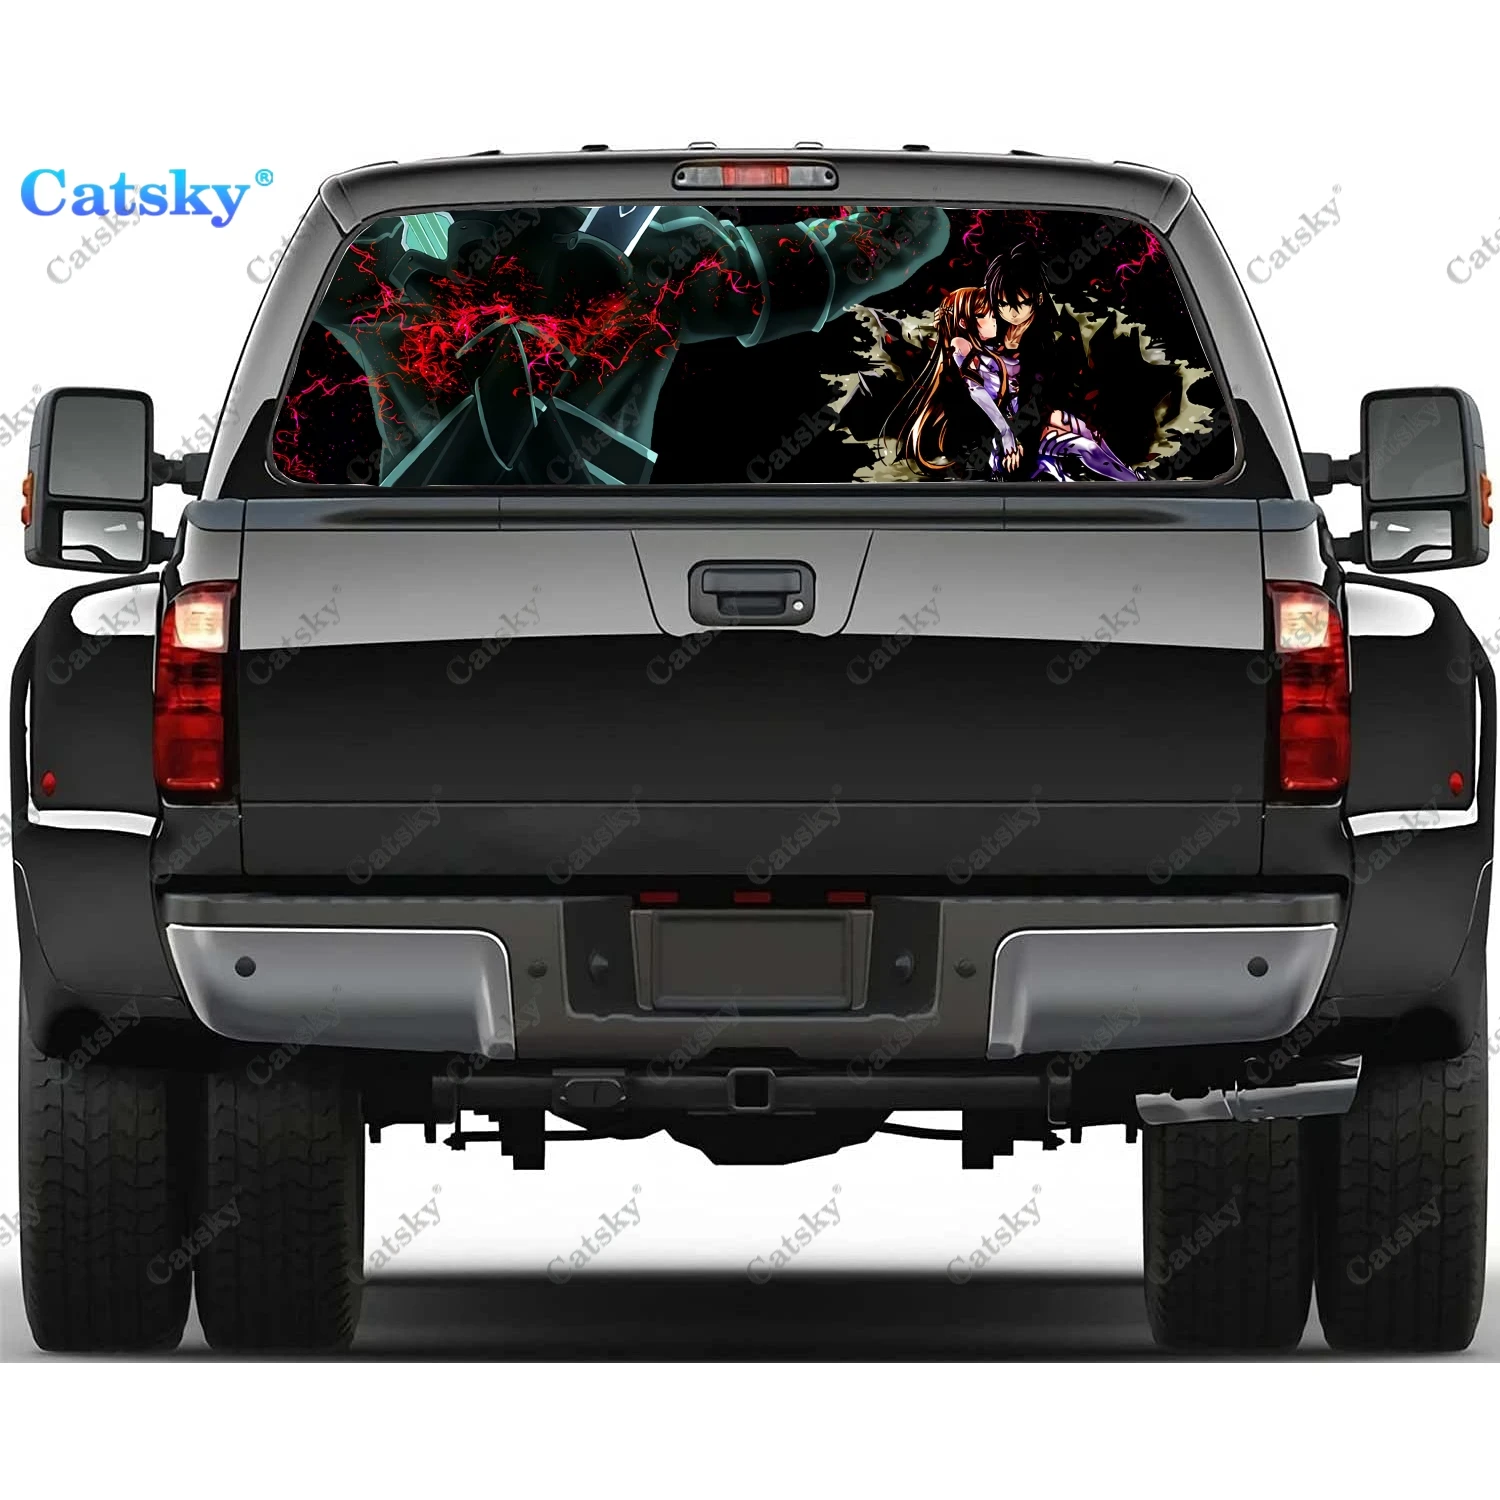 

Sword Art Online Аниме автомобиль переводная Наклейка для окна Графический декоративный грузовик наклейка перфорированный виниловый Универсальный Автомобильный стикер